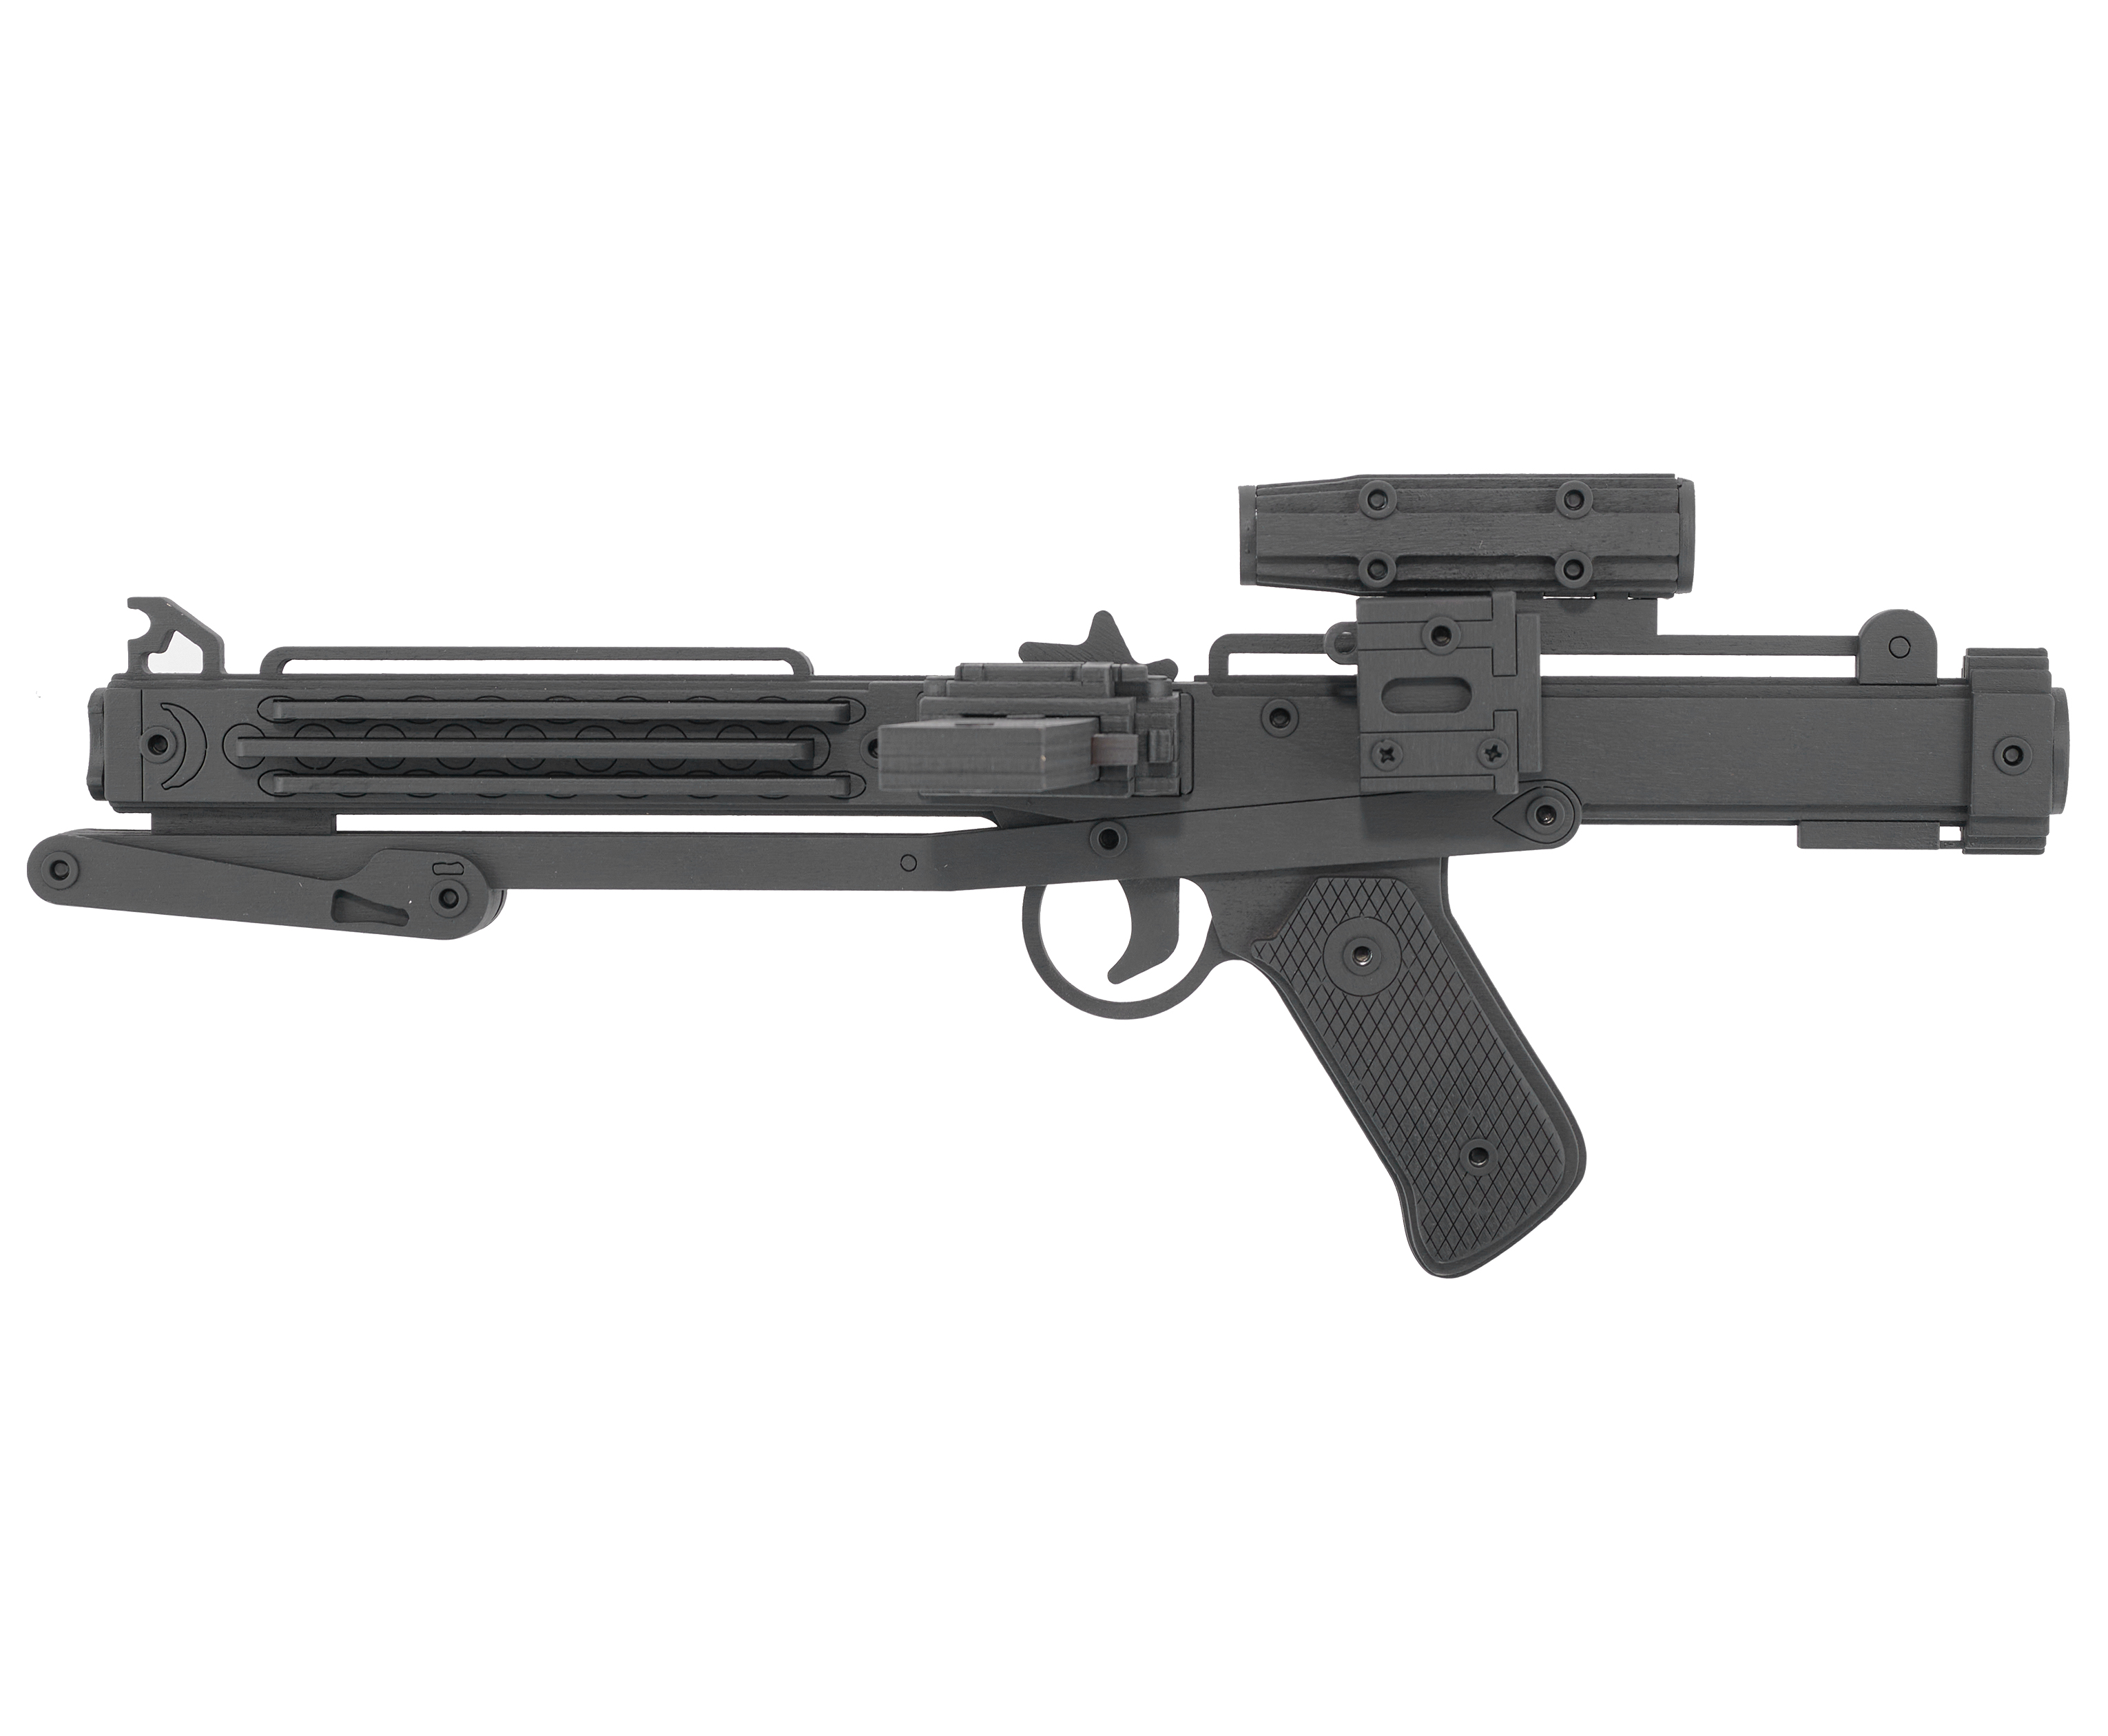 Резинкострел игрушечный Arma toys лазерная винтовка E-11 макет, Star Wars, AT011 резинкострел arma toys автомат ак 47 макет окрашенный калашников at006k